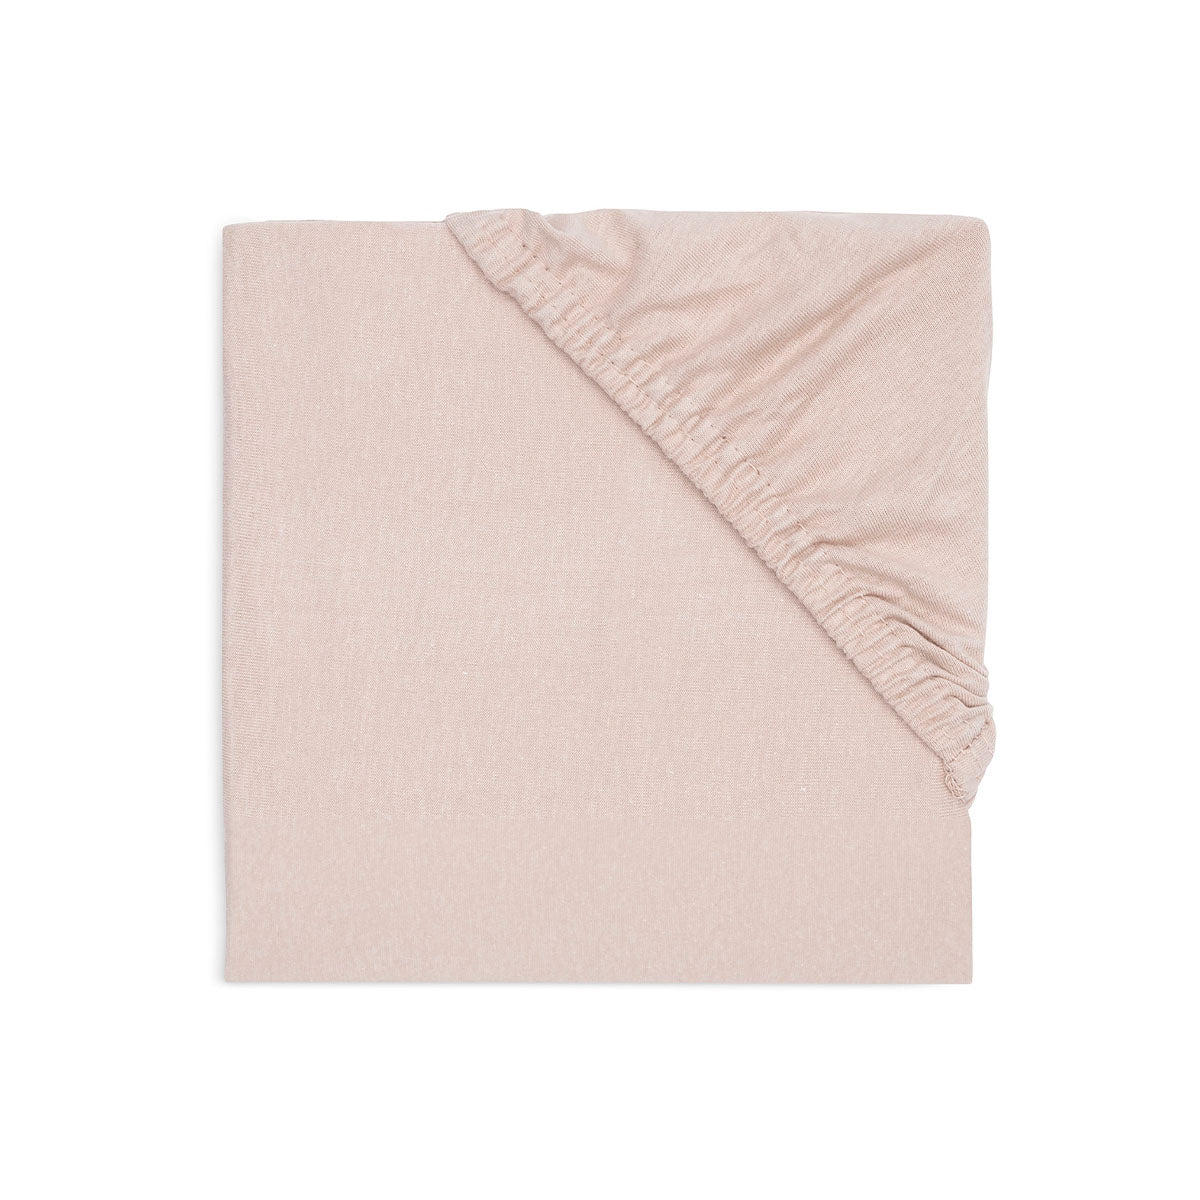 Bescherm het matrasje met het stijlvolle hoeslaken jersey wild rose van Jollein. Het hoeslaken biedt veiligheid en comfort voor jouw kindje. Combineer met het items uit dezelfde collectie. In 3 maten. VanZus